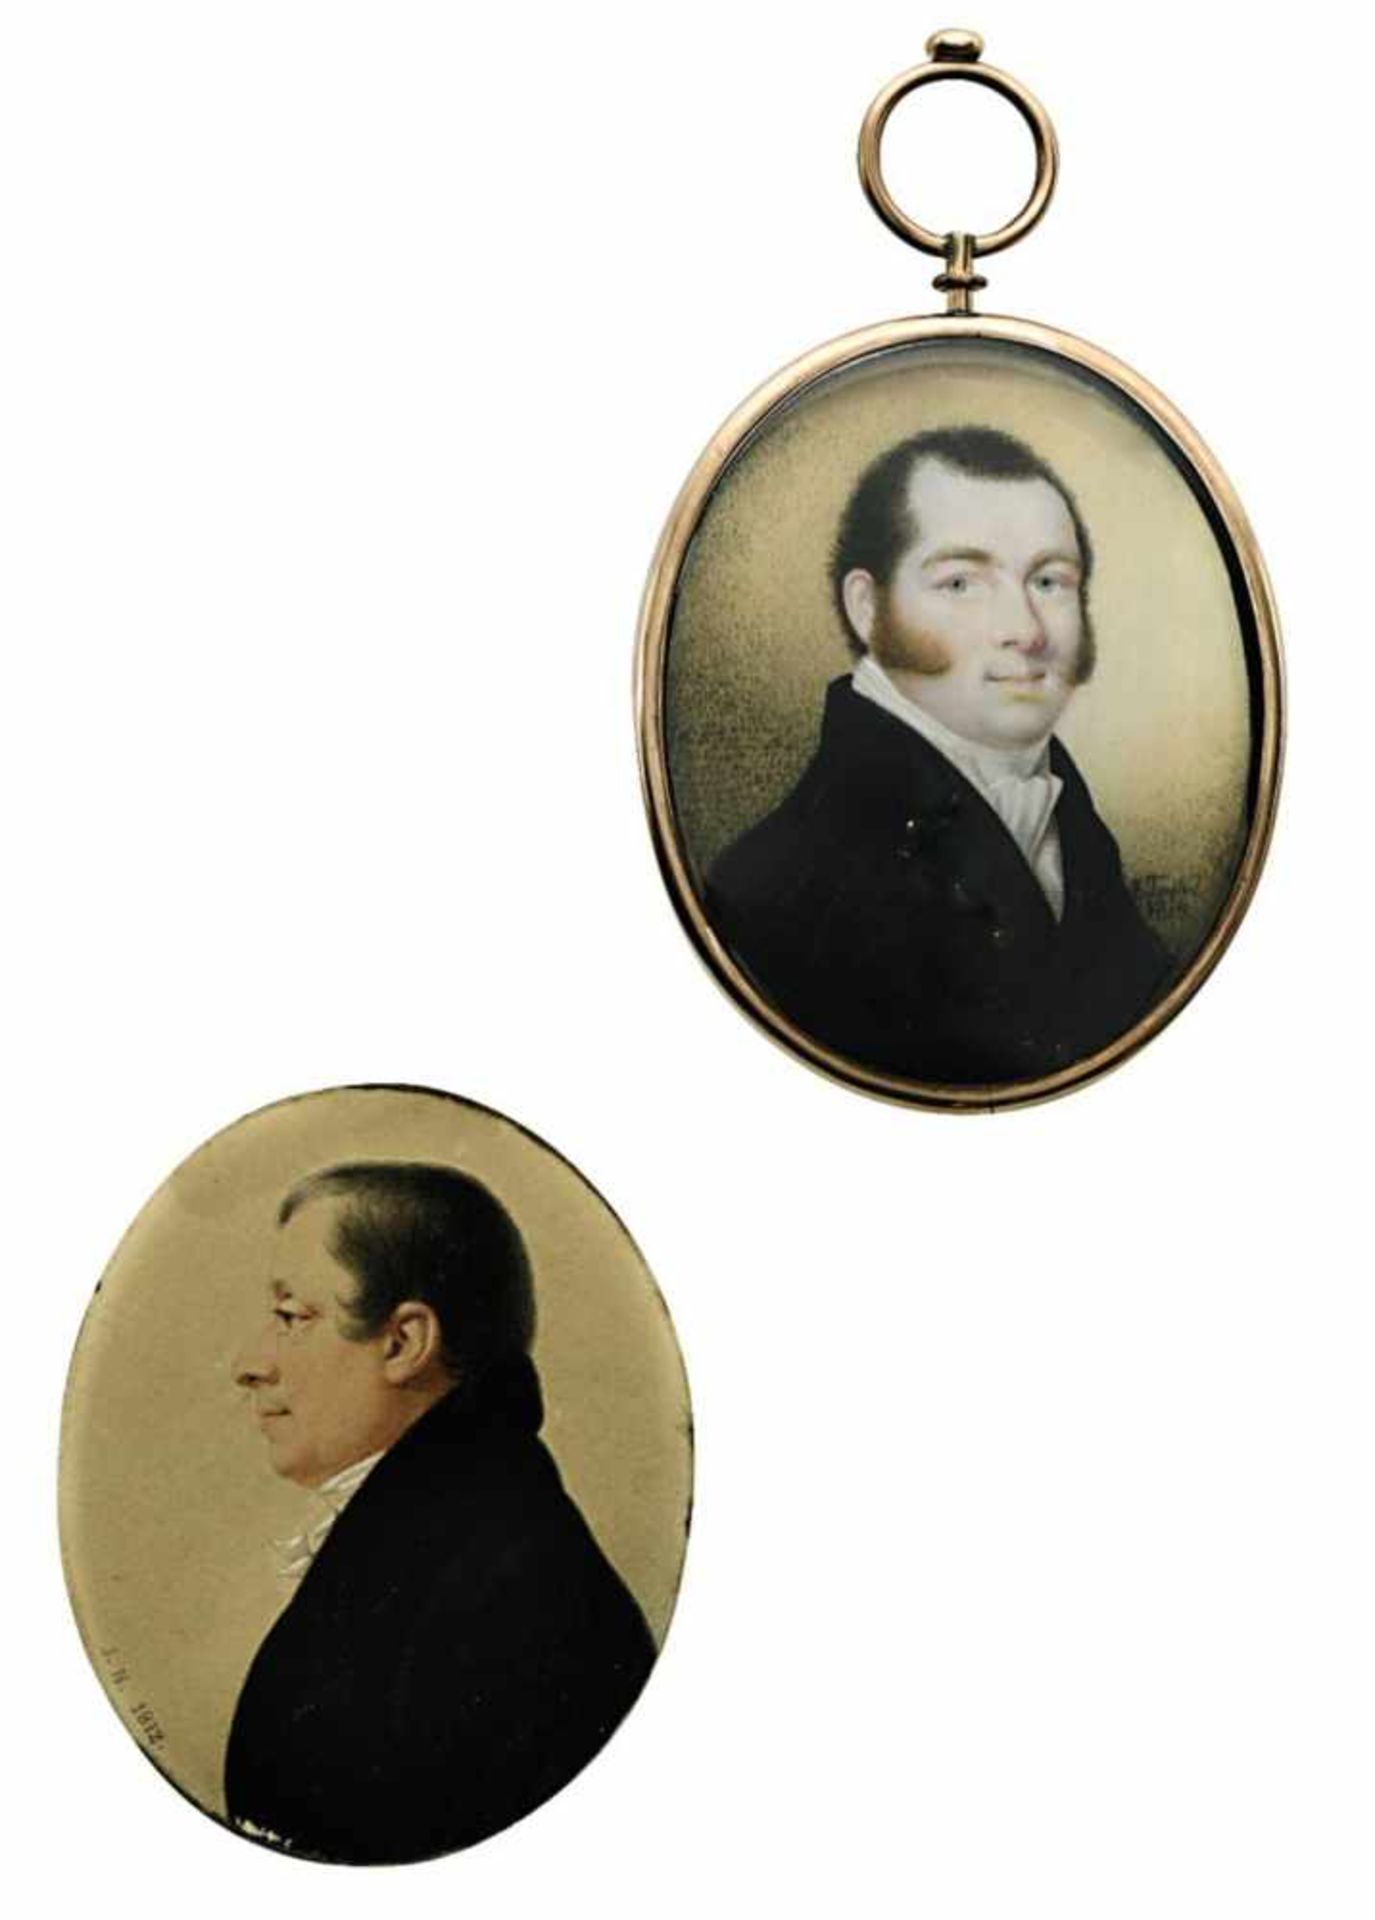 Zwei HerrenporträtsZwei Miniaturen. E. Taylor (1780-1830) (?) bzw. 19. Jh. Aquarell und